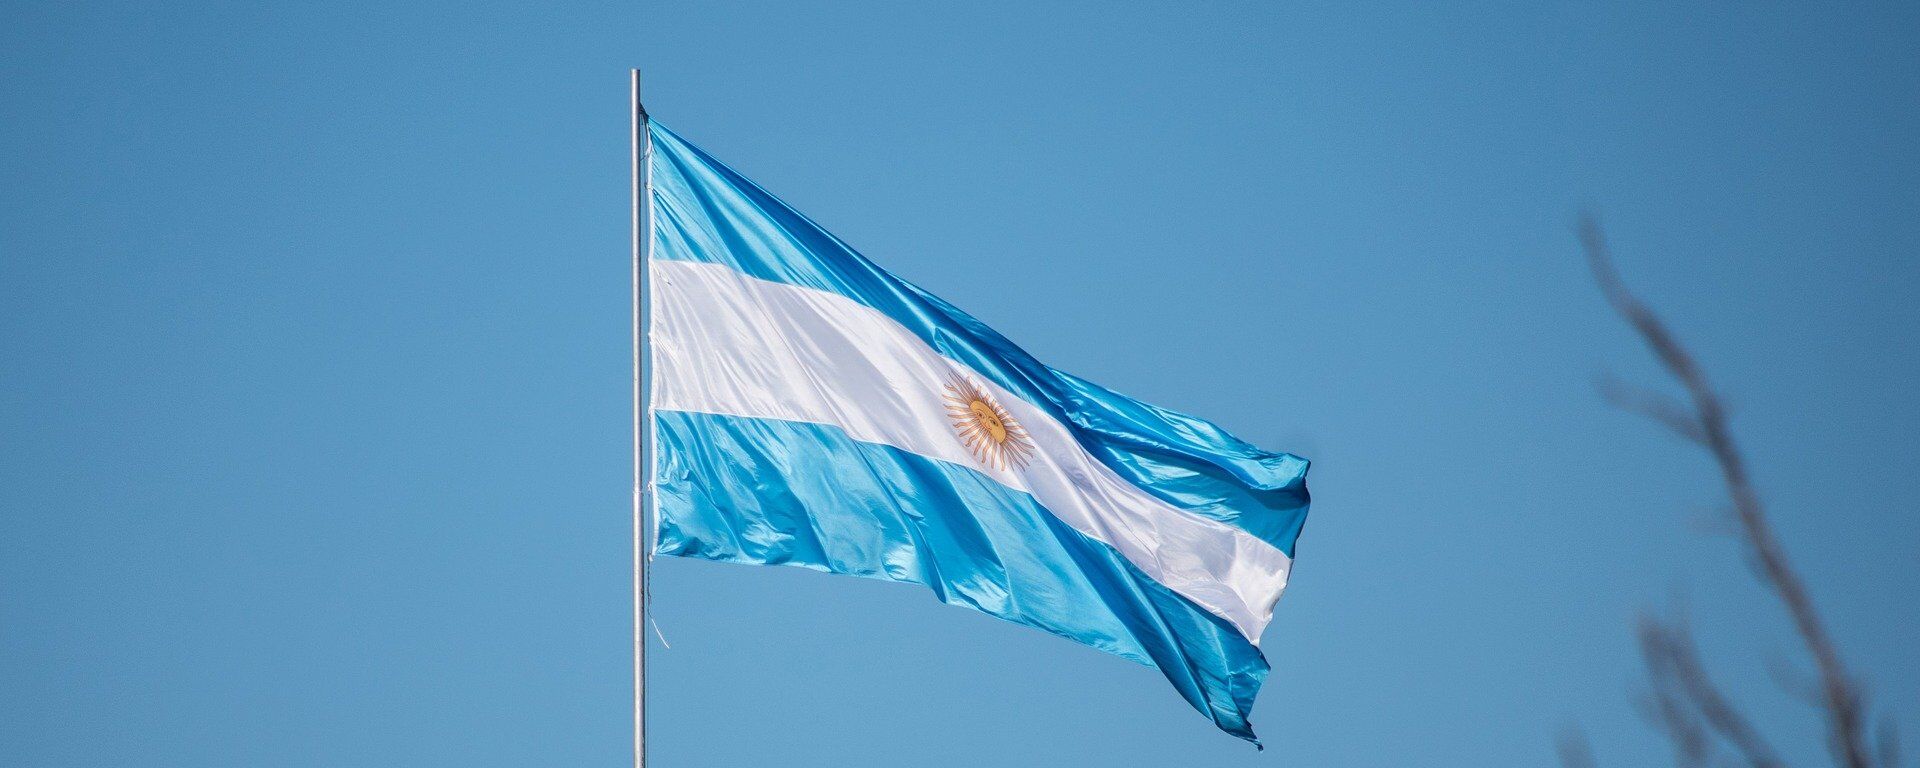 La bandera de Argentina - Sputnik Mundo, 1920, 22.02.2021